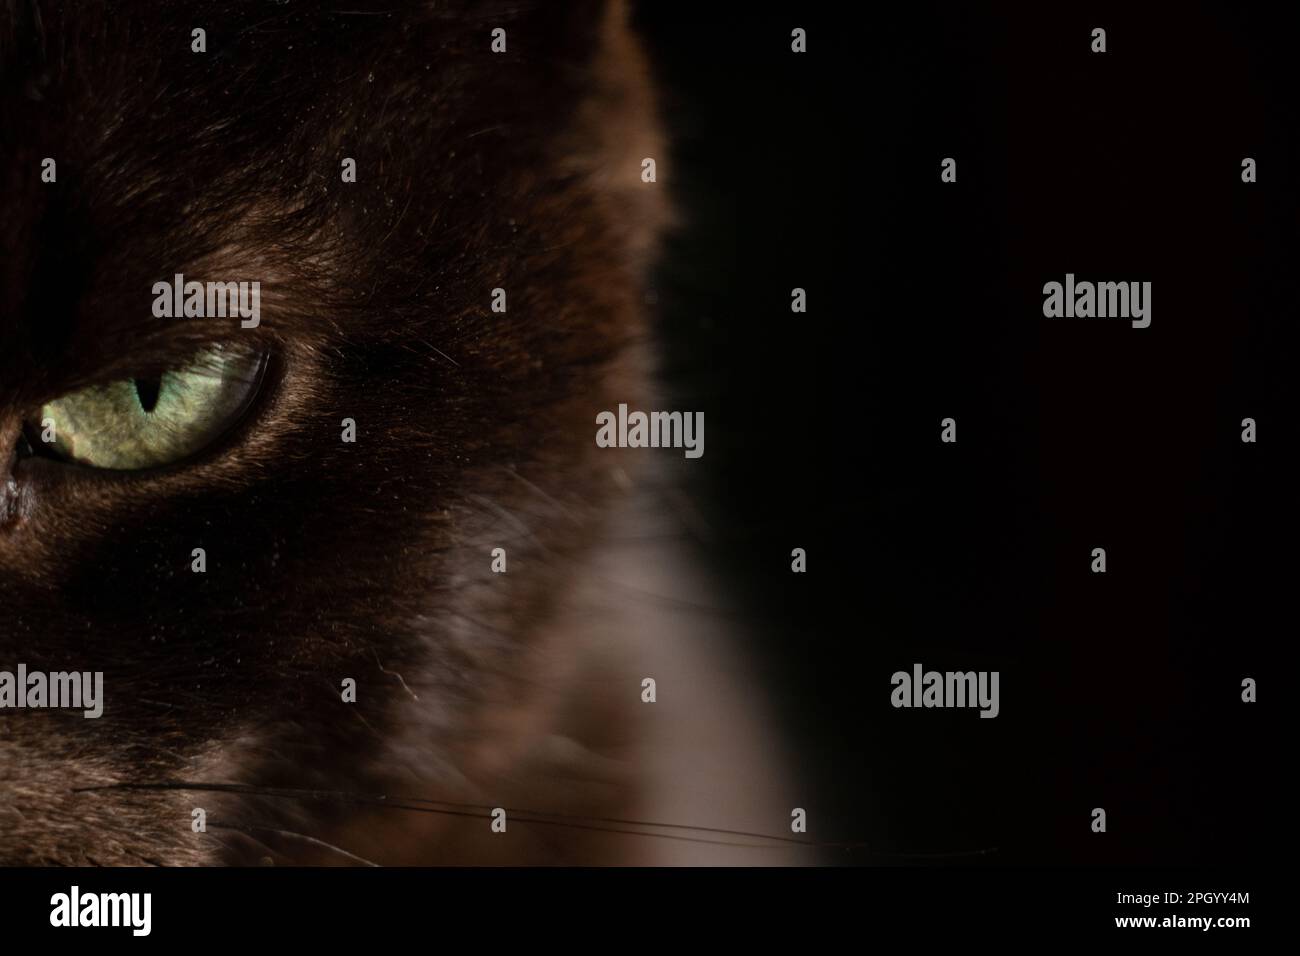 ritratto di un gatto nero su sfondo scuro primo piano, gli occhi di un gatto nero Foto Stock